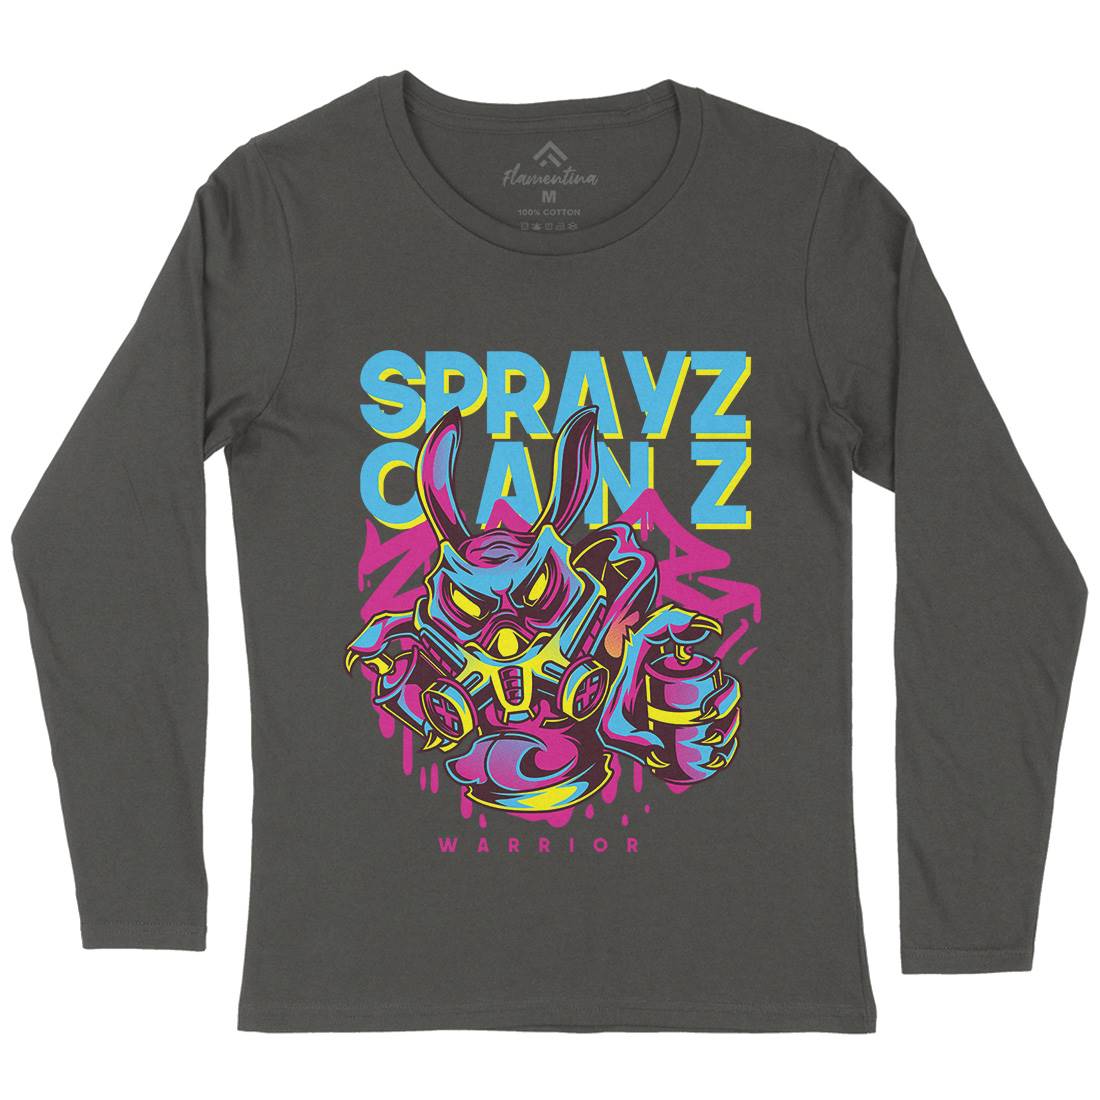 Spray Cans Womens Long Sleeve T-Shirt Graffiti D833